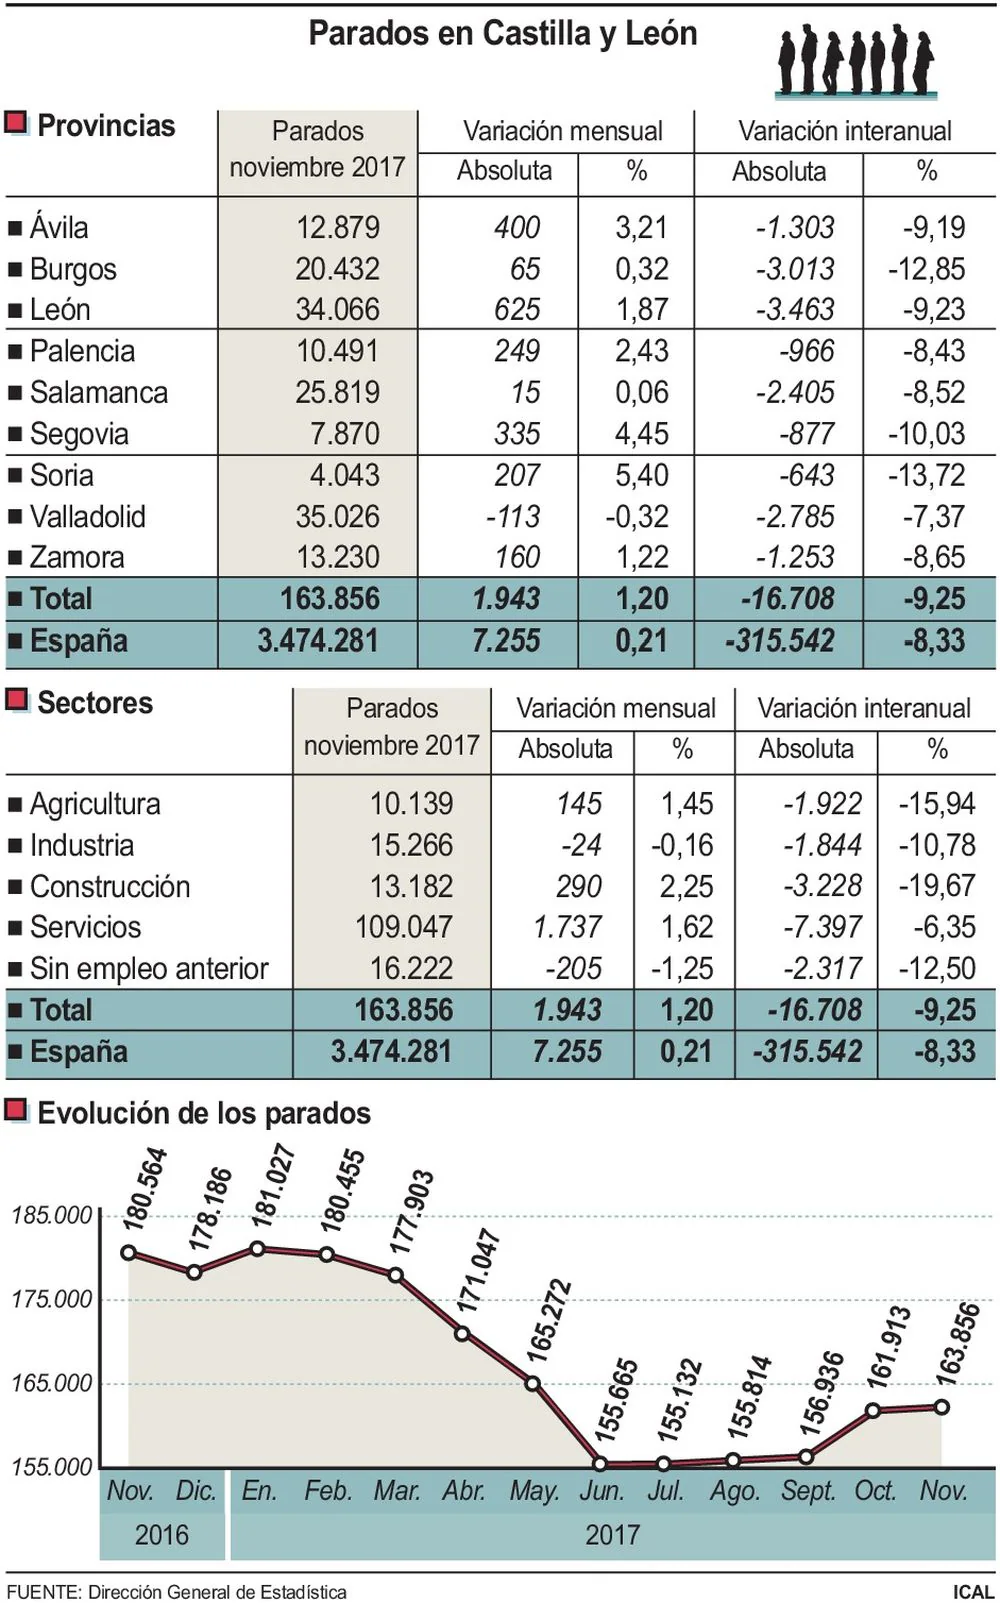 El desempleo sube en 1.943 personas en noviembre y deja la cifra de Castilla y León en 163.586. En León la cifra de desempleados supera los 34.000